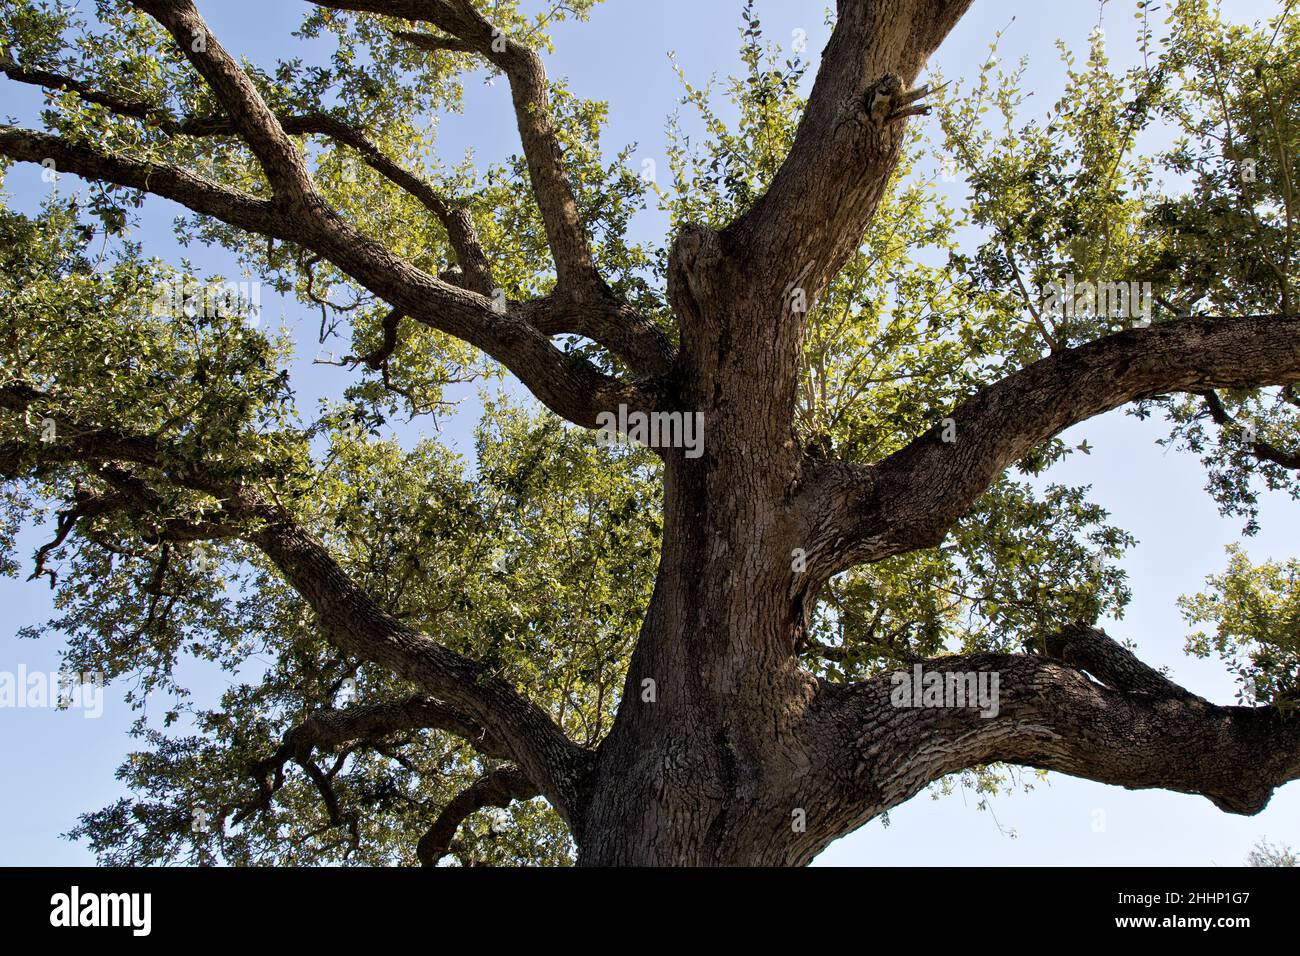 Coastal Live Oak 'Quercus virginiana' en regardant vers le haut, Rockport, Texas. Banque D'Images